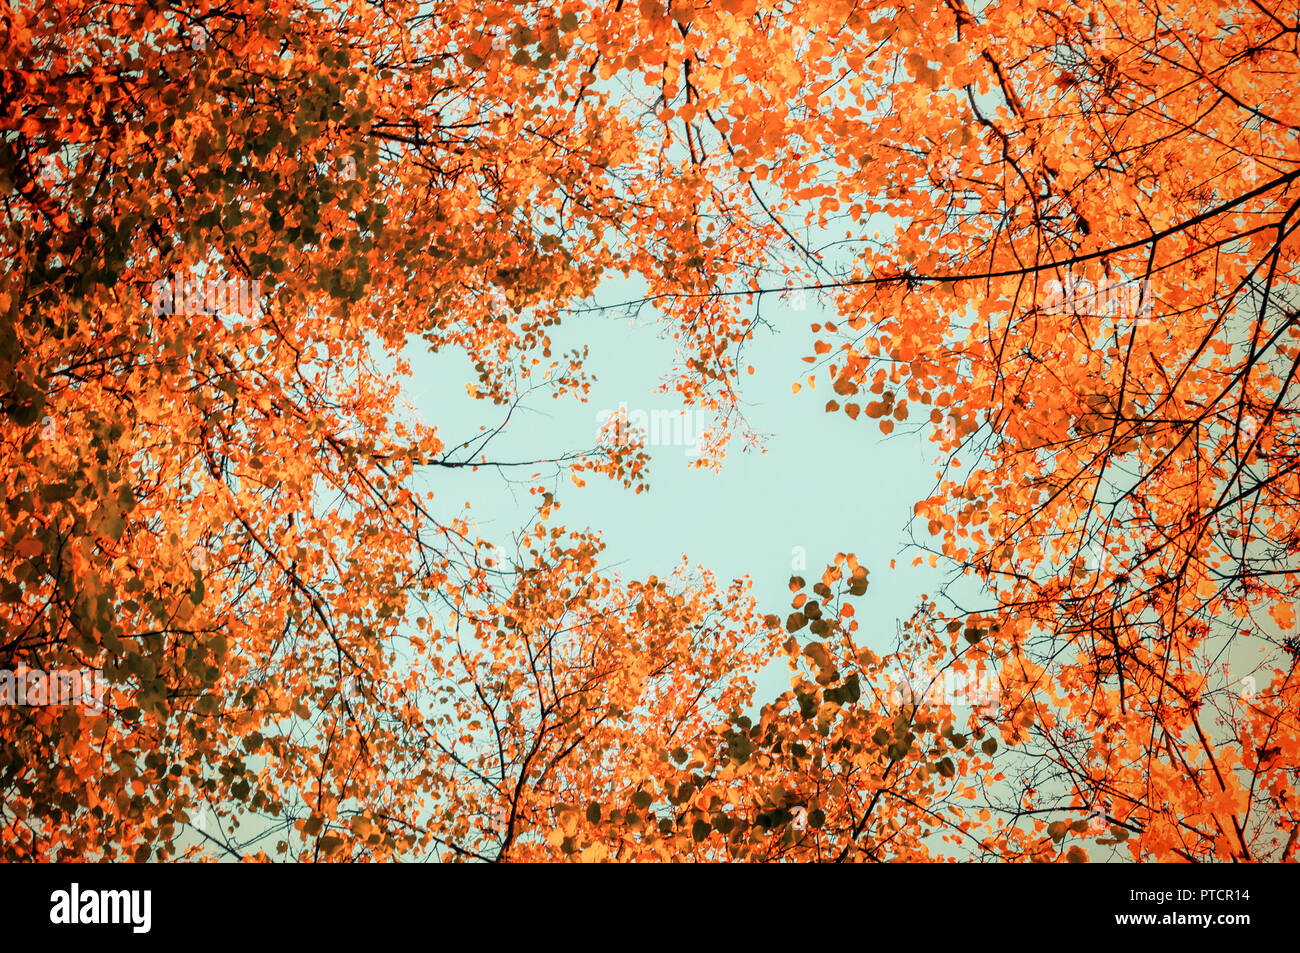 Autumn Tree Tops - orange Bäume im Herbst tops gegen den blauen Himmel. Bäume im Herbst Äste vor blauem Himmel im sonnigen Herbst Wetter Stockfoto